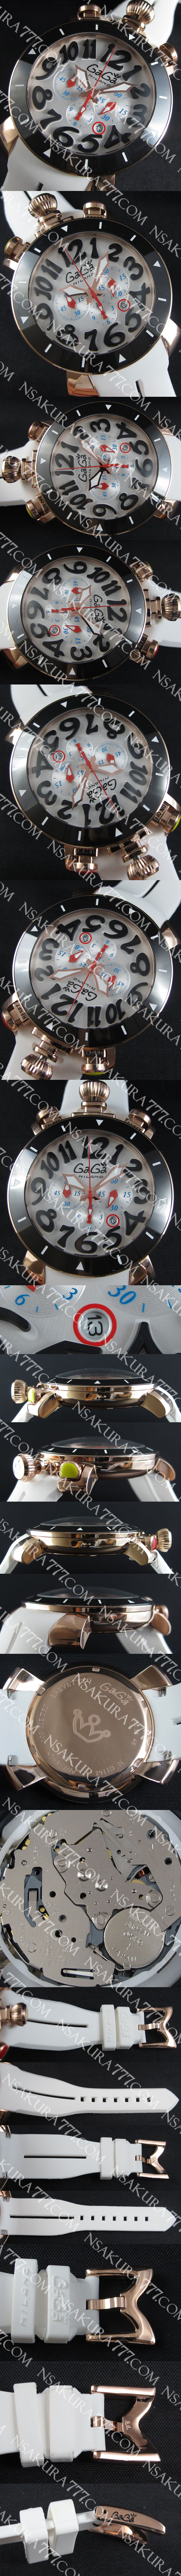 高級腕時計ガガ ミラノクロノグラフ48mm(ブラックベゼル)